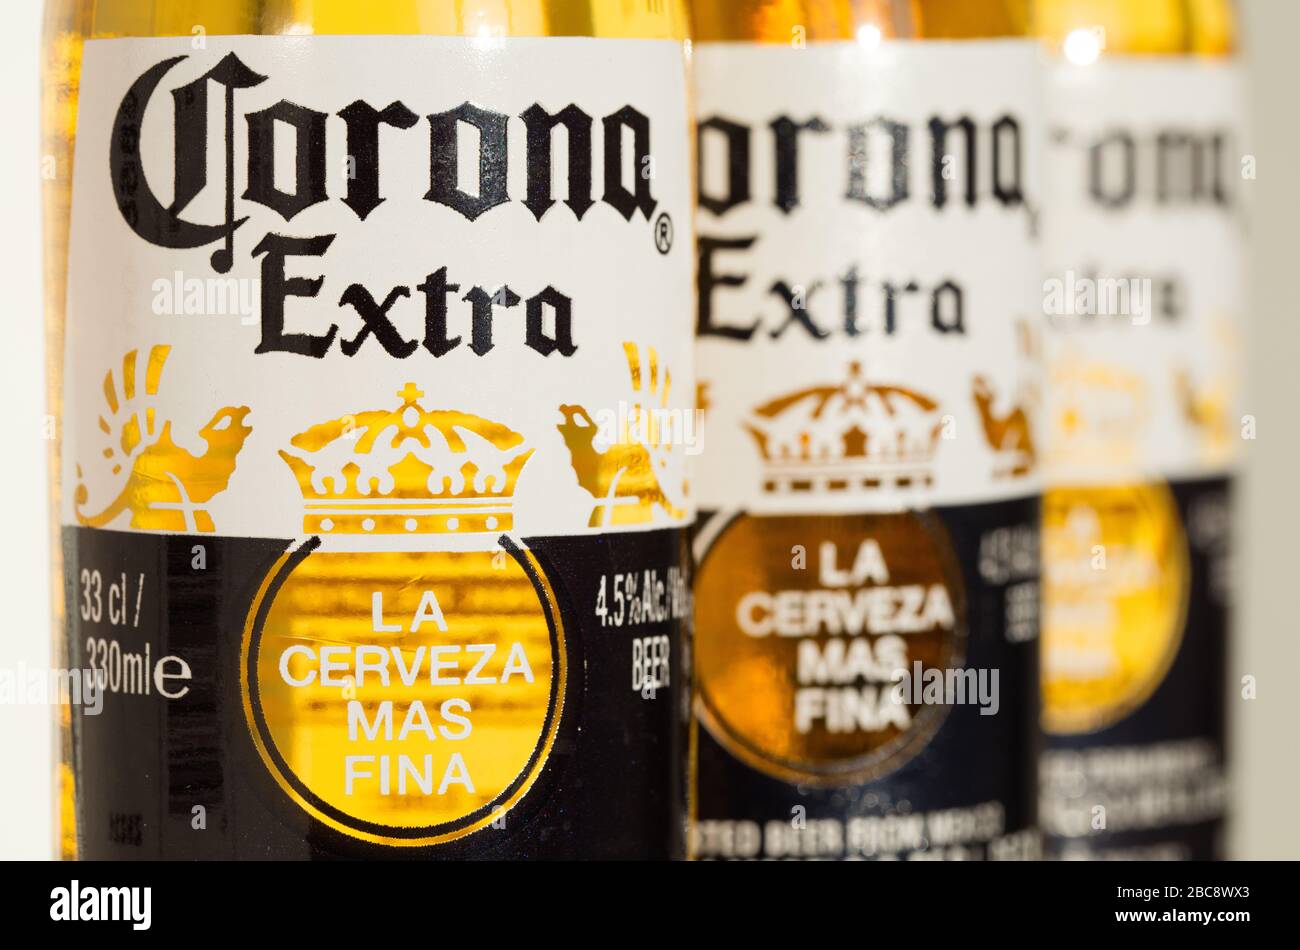 Botellas de cerveza Corona Extra. La producción se ha detenido debido a la pandemia del coronavirus. Foto de stock